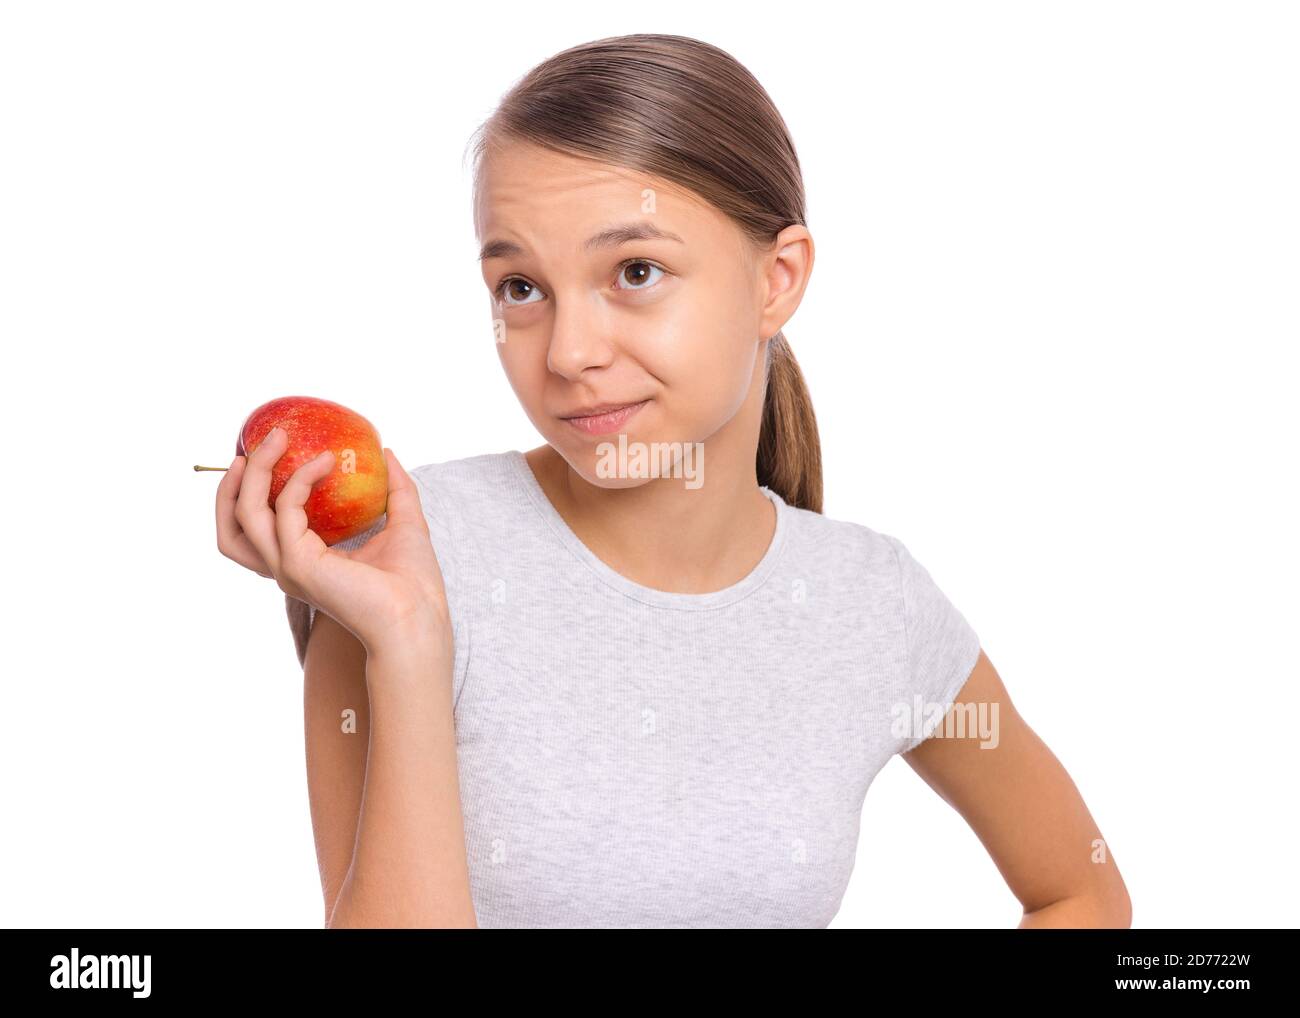 Glücklich schöne junge Teenager-Mädchen hält Apfel, isoliert auf weißem Hintergrund Stockfoto